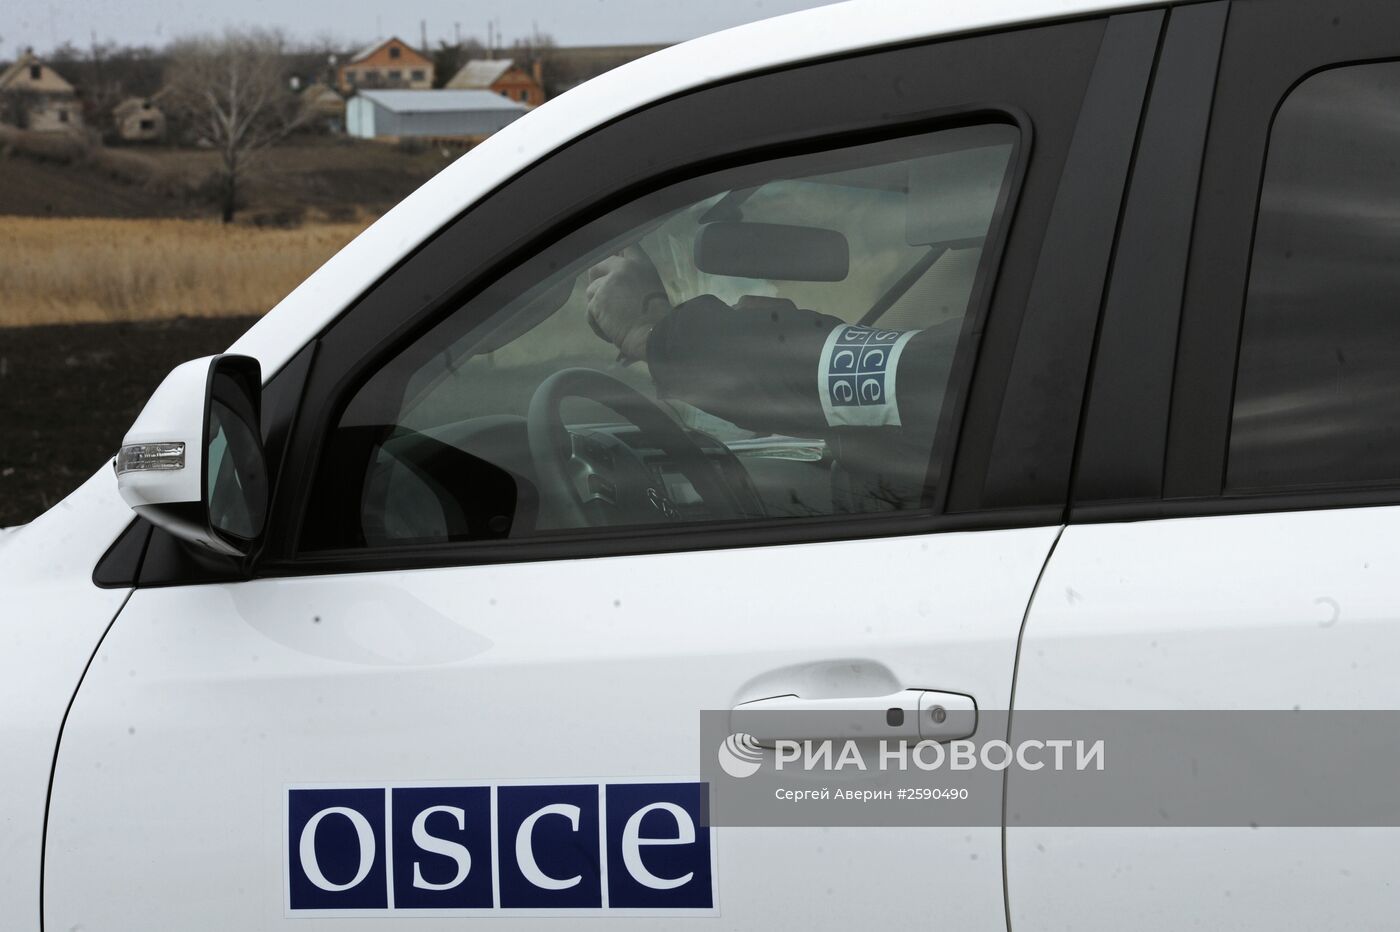 ОБСЕ проконтролировало места отвода артиллерии в Донецкой области